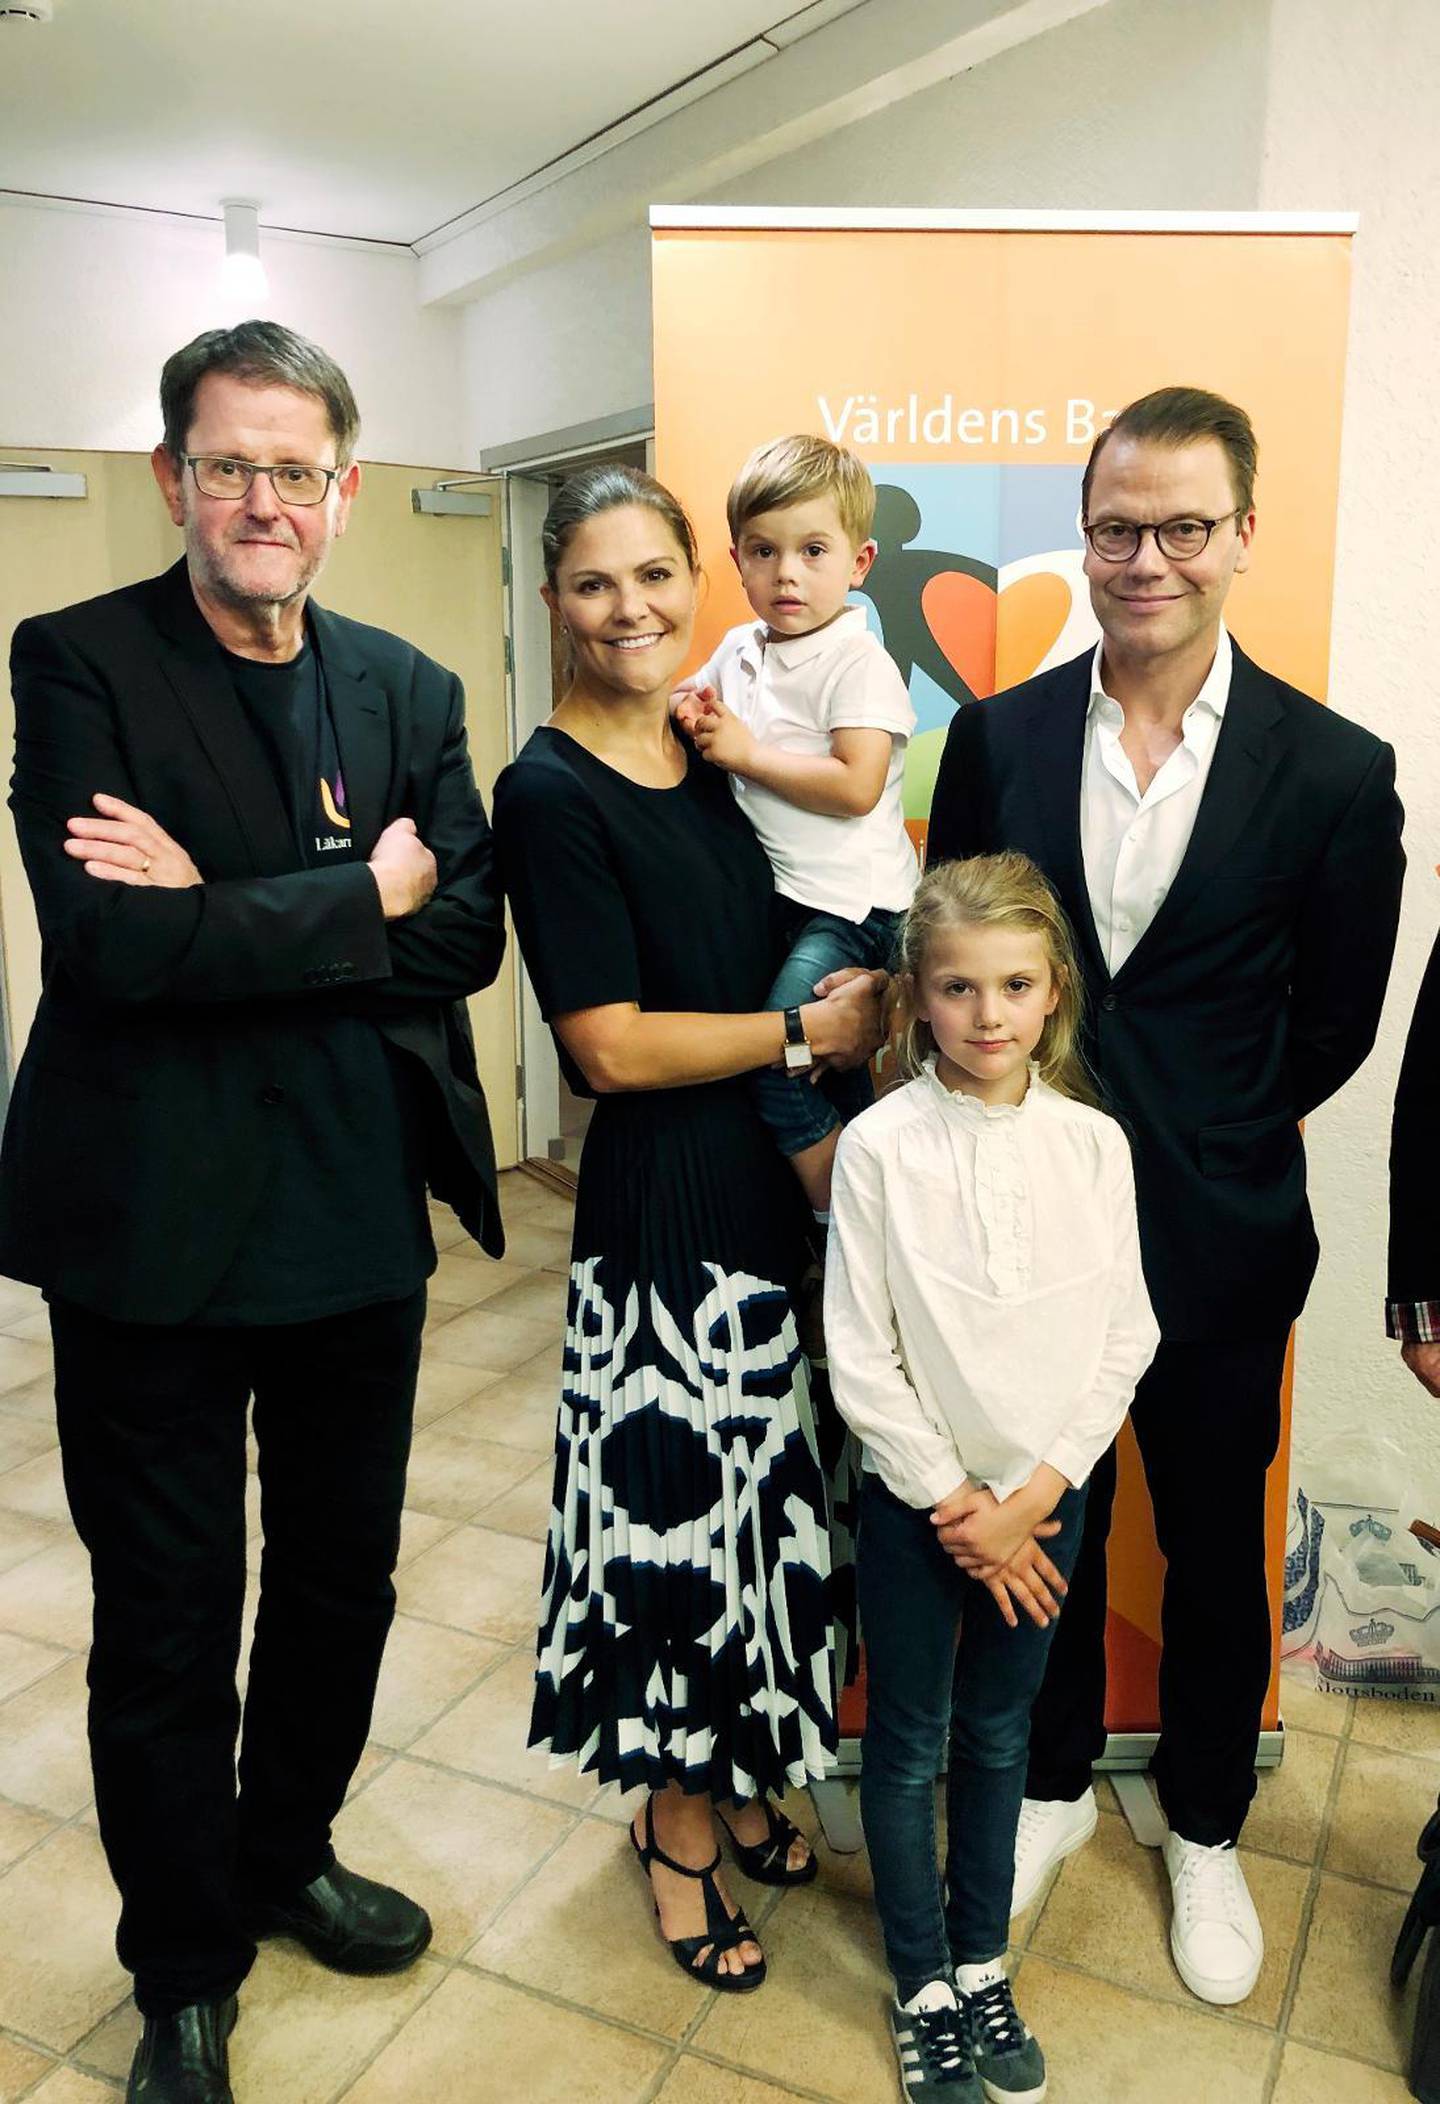 Onsdag den 11 september 2019 sjöng prinsessan Estelle med Perla Bjurenstedt på en Världens barn-konsert i Grindtorpskyrkan i Täby. Kronprinsessan Victoria och Prins Daniel och lillebror Oscar var också där.